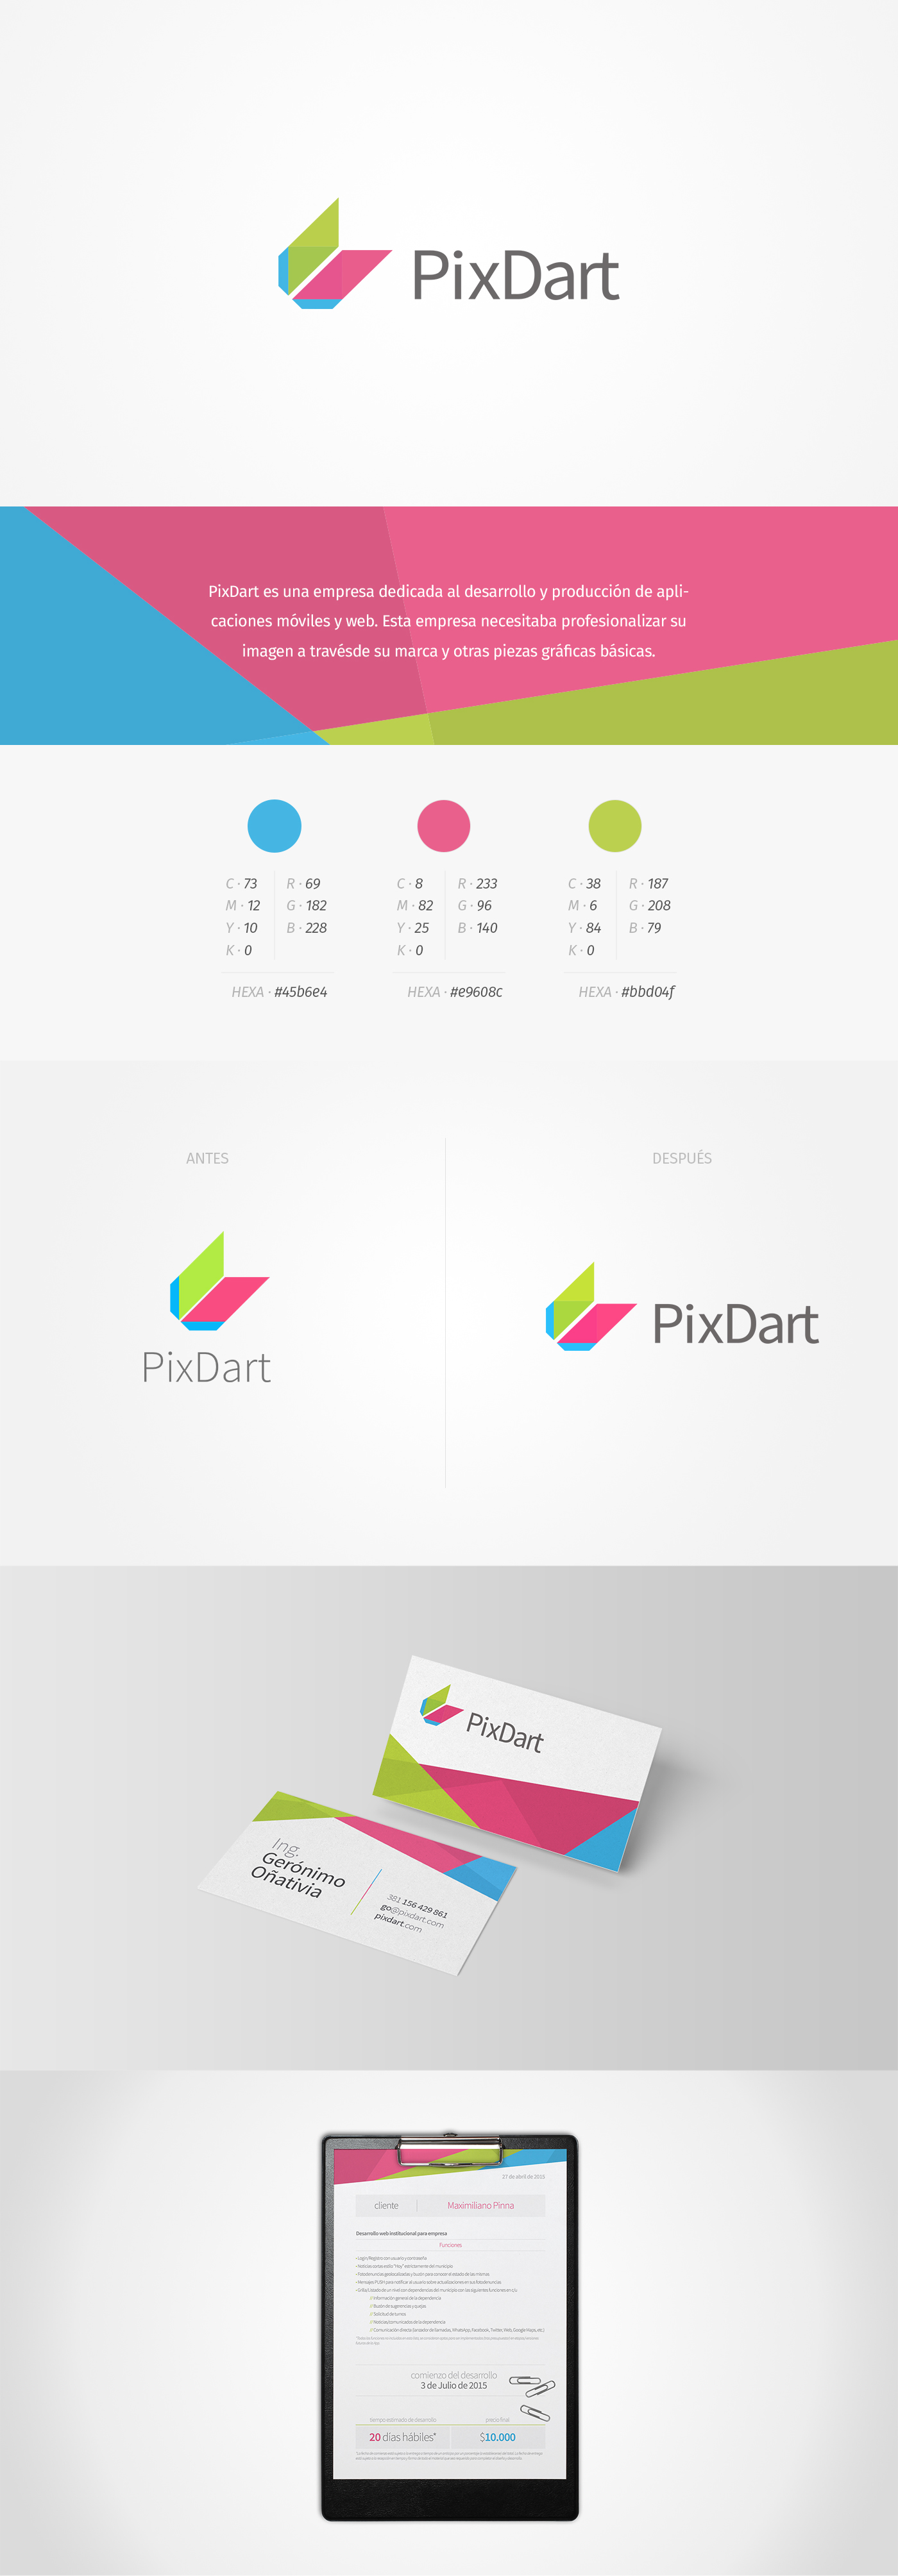 diseño grafico diseño gráfico pixdart Web develop desarrollo mobile apps